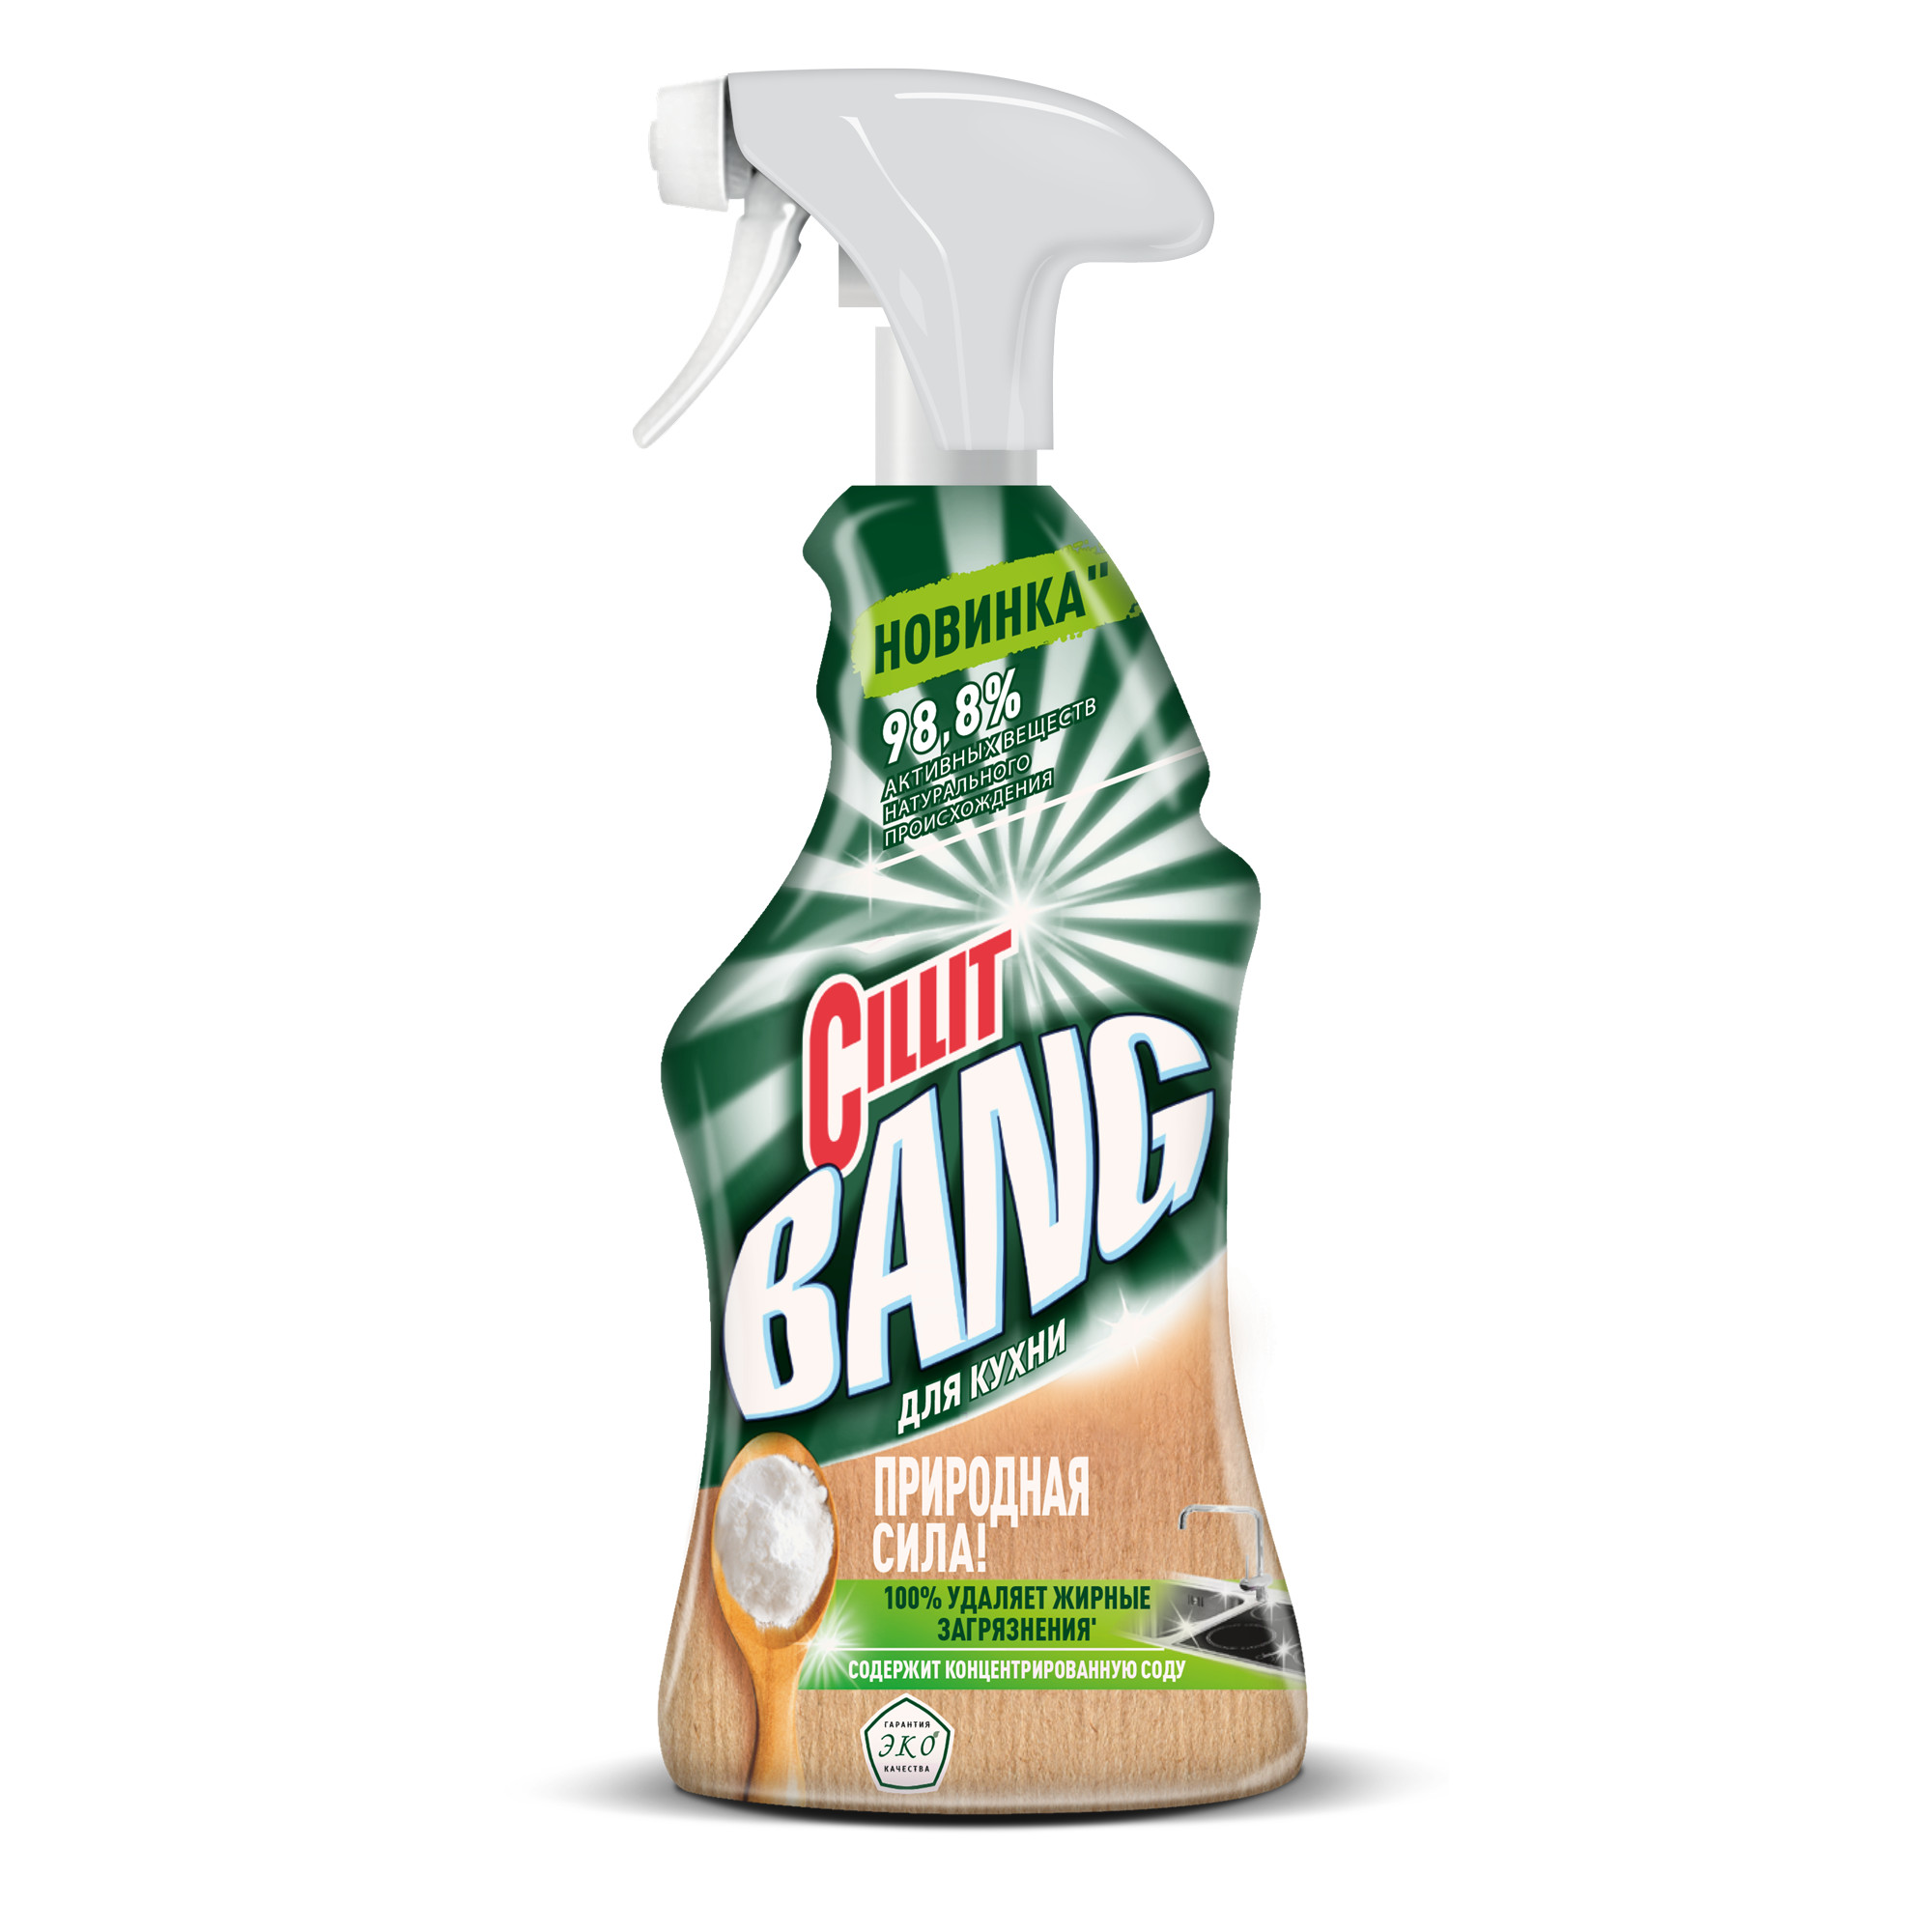 Средство чистящее Cillit Bang Природная сила для кухни с содой 450 мл чистящее средство для кухонных поверхностей fedora